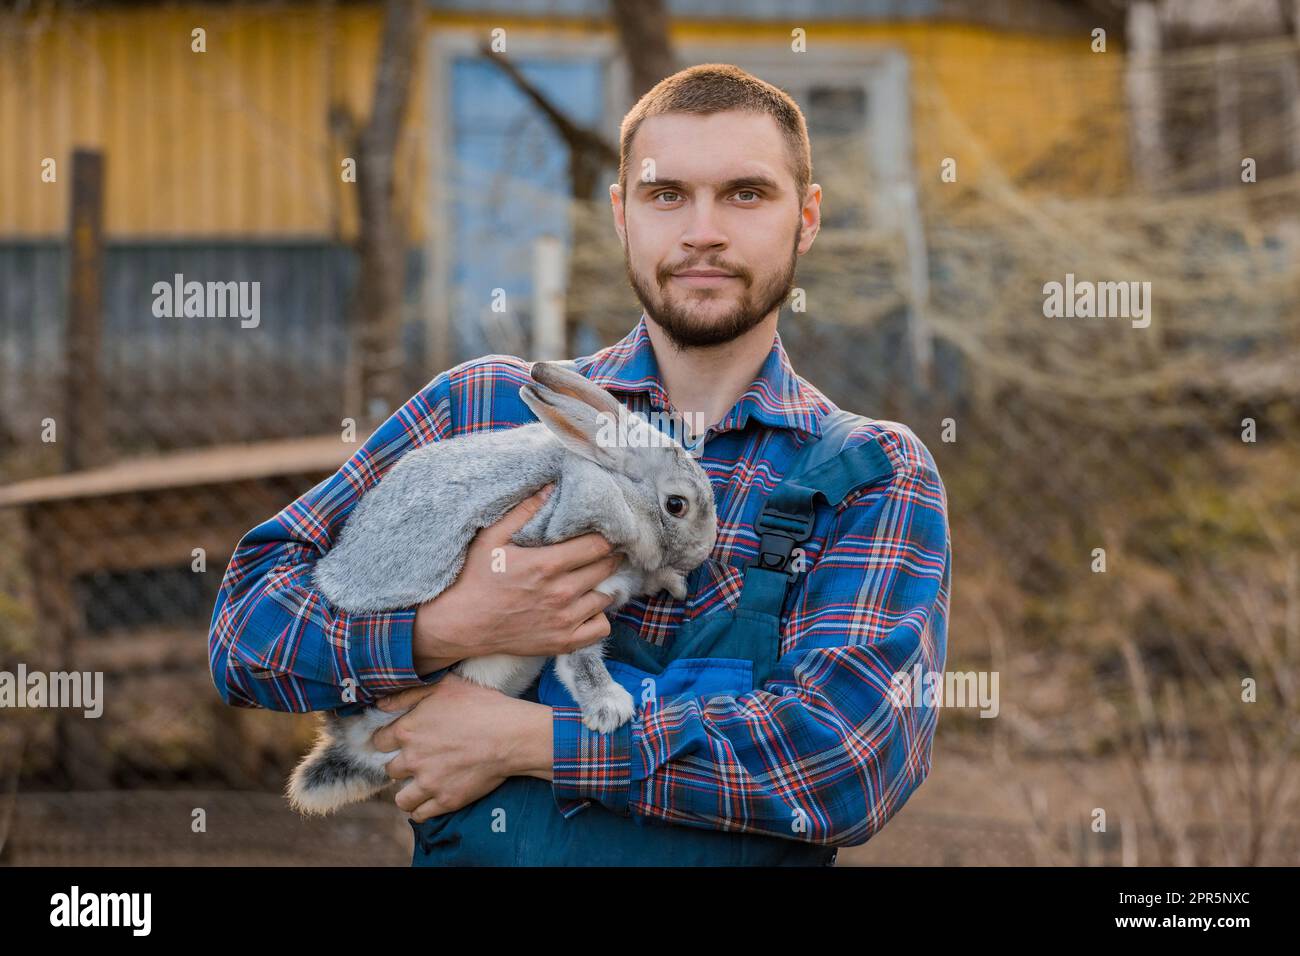 Contadino bello soddisfatto ritratto rurale caucasico europeo in campagna con barba, camicia e tute guardando la macchina fotografica con coniglio bianco nella sua A. Foto Stock